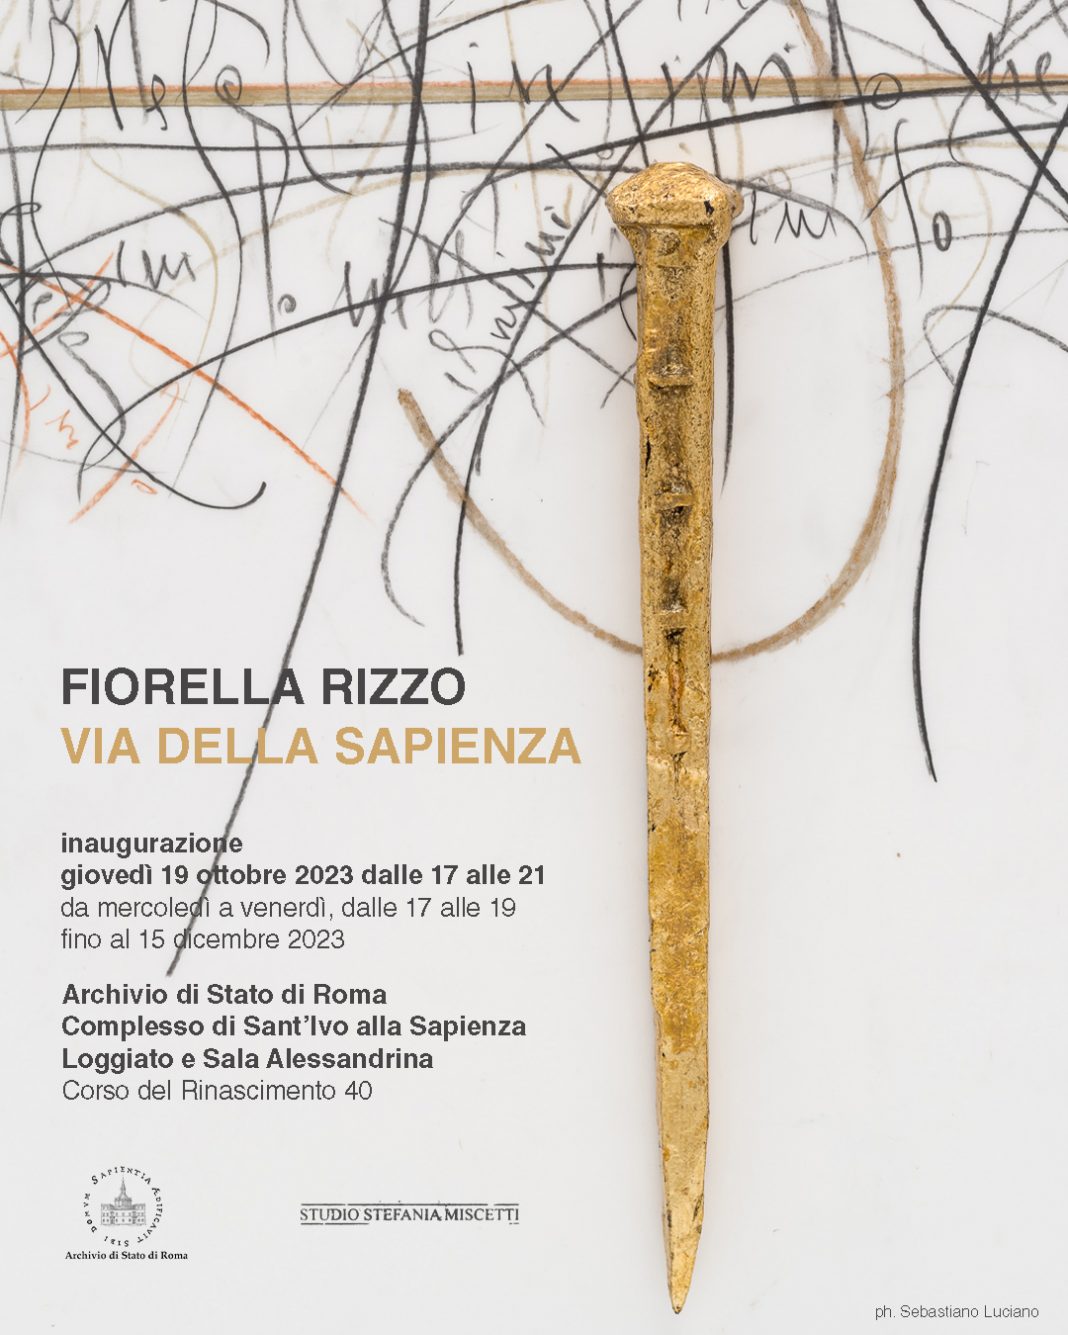 Fiorella Rizzo – Via della Sapienzahttps://www.exibart.com/repository/media/formidable/11/img/b86/fiorella-rizzo-via-della-sapienza-2023-1068x1335.jpg